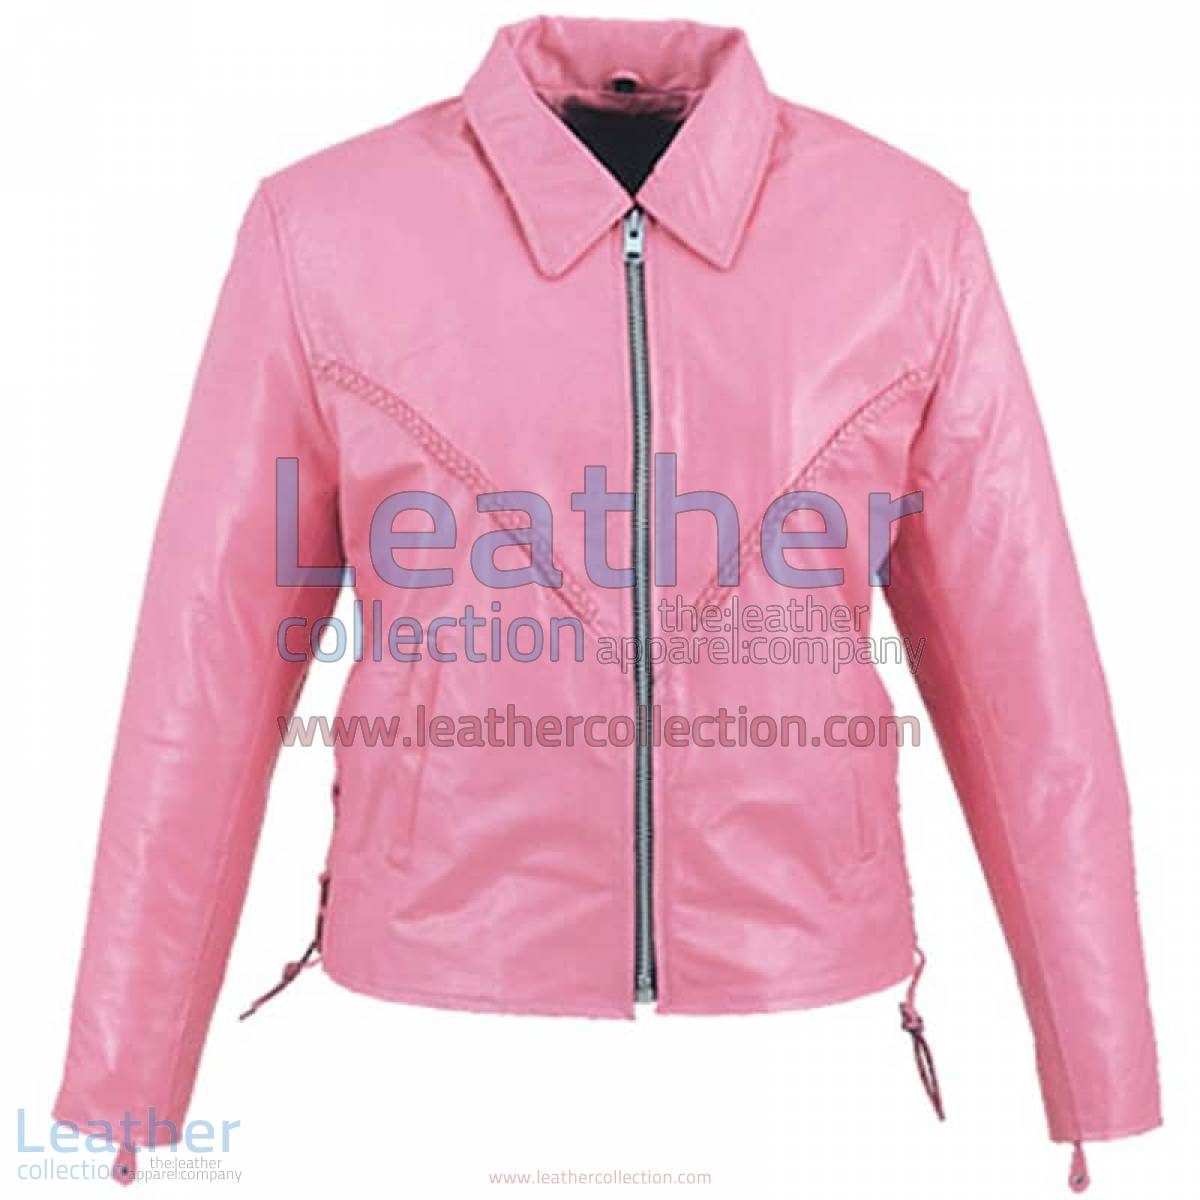 Leather Braided Pink Ladies Jacket | pink ladies jacket,braided jacket